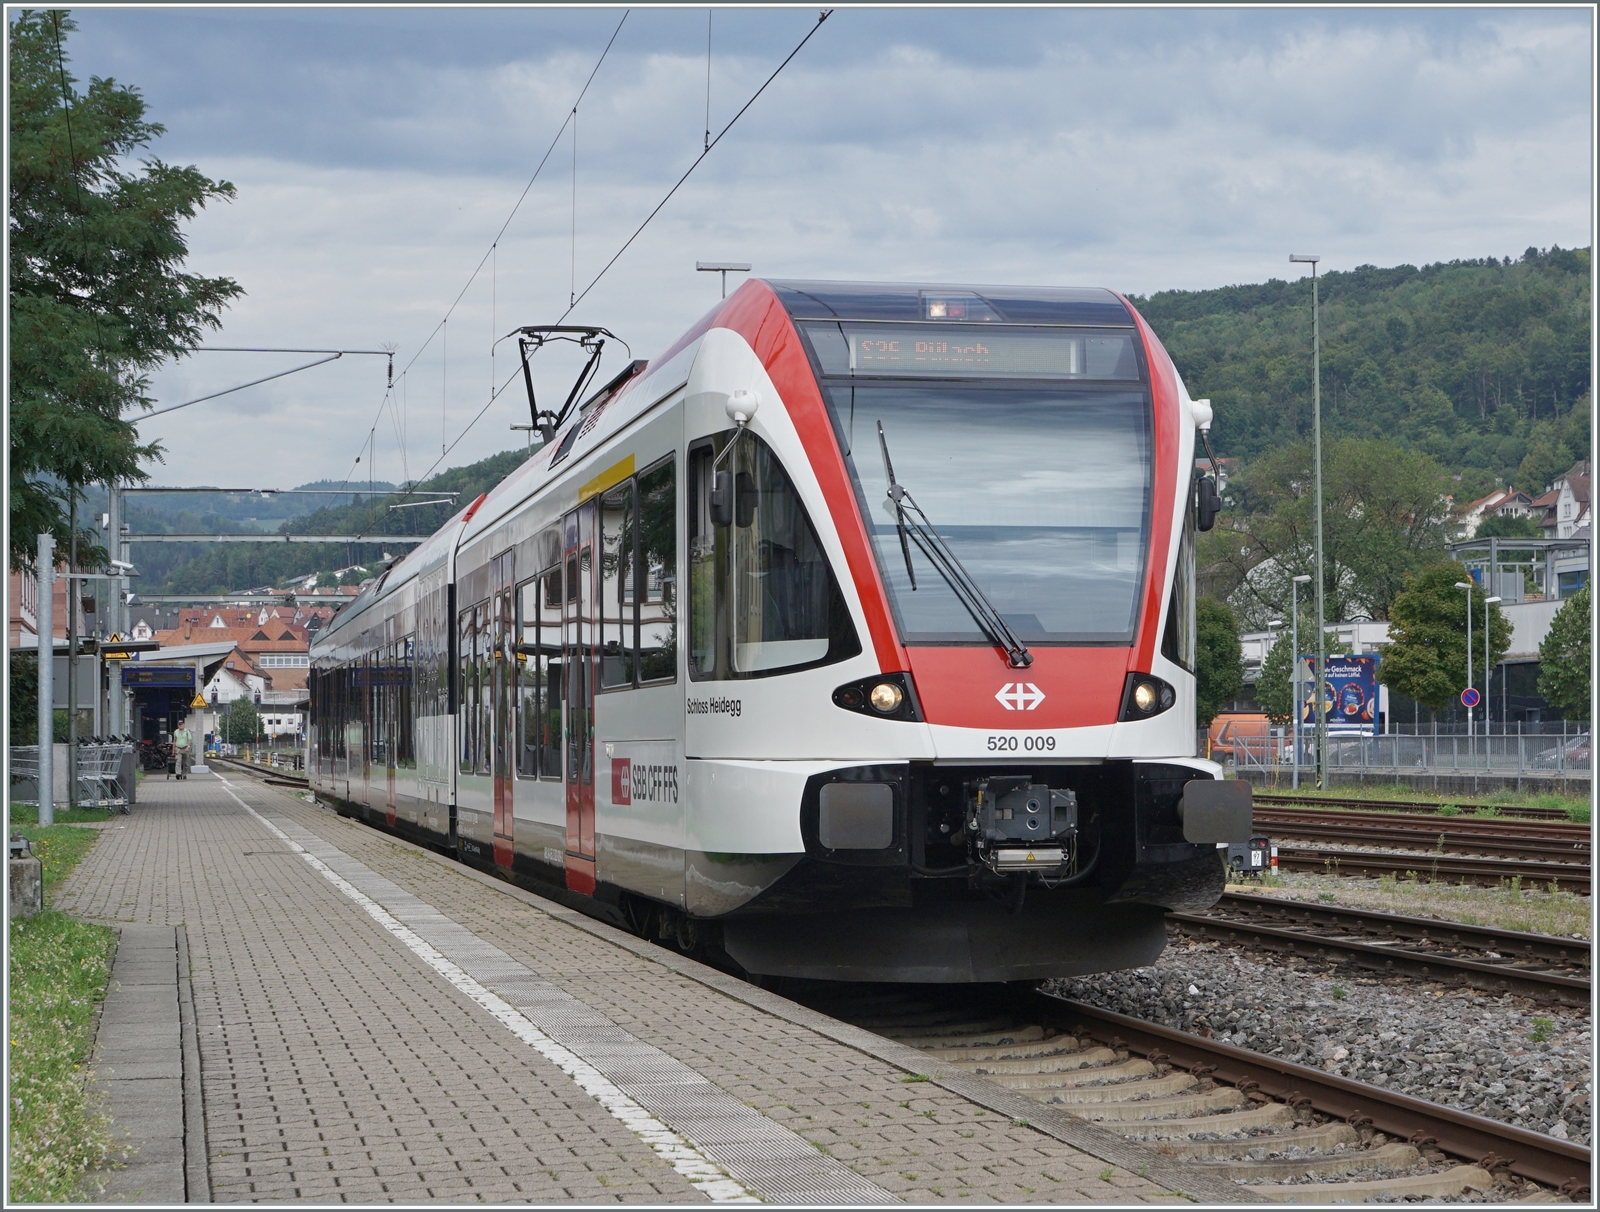 Der  Schmalspur -Triebwagen RABe 520 009 wartet im deutschne Waldhut auf in Richtung Koblenz. 

6. Sept. 2022